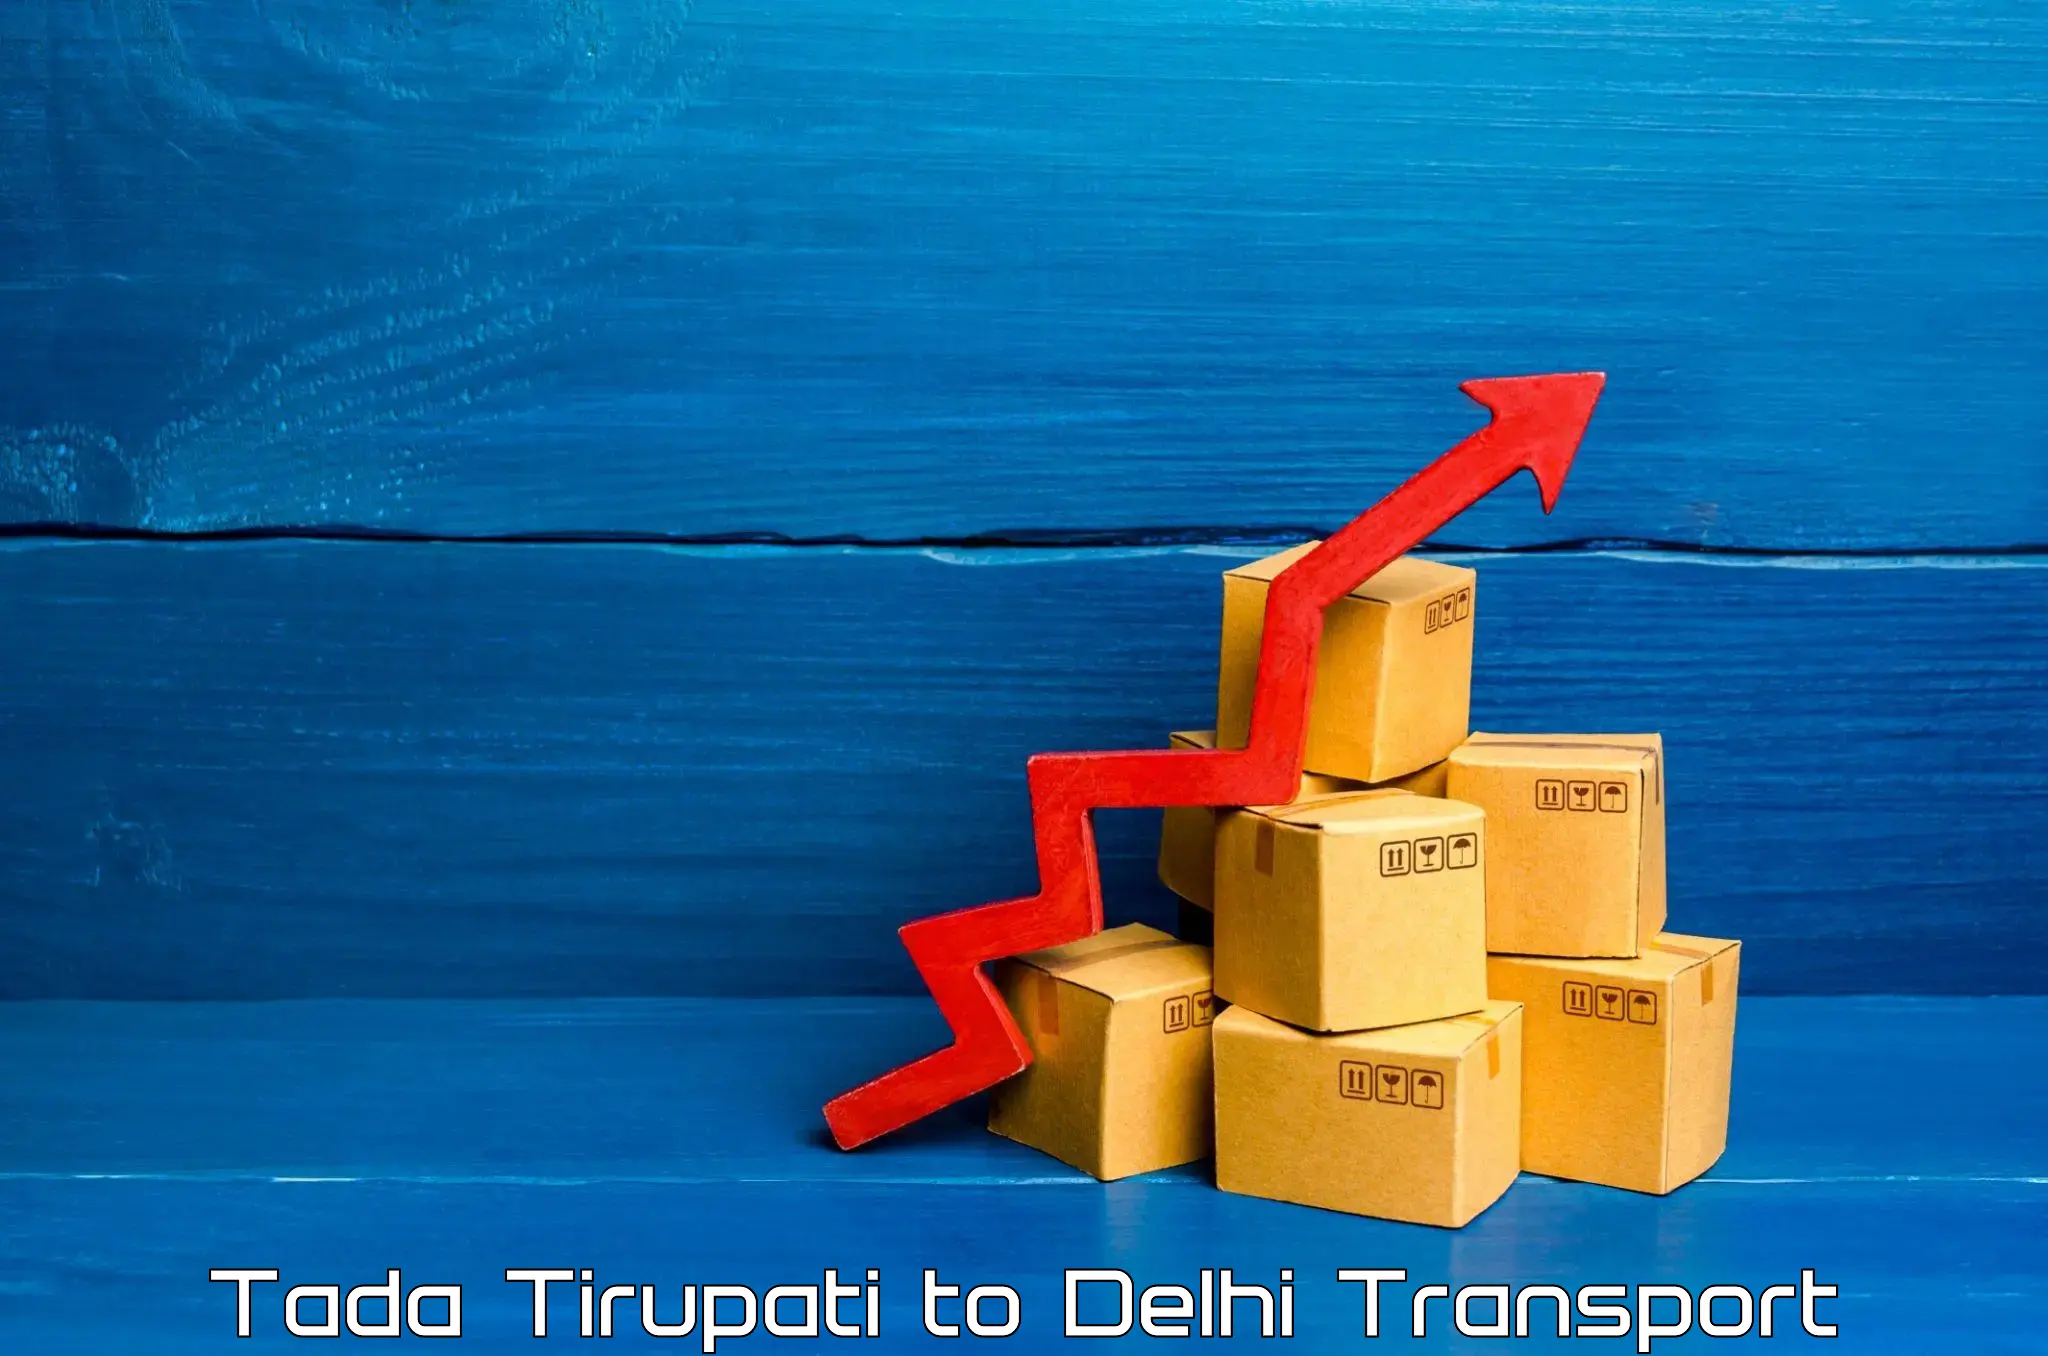 Goods delivery service Tada Tirupati to Delhi